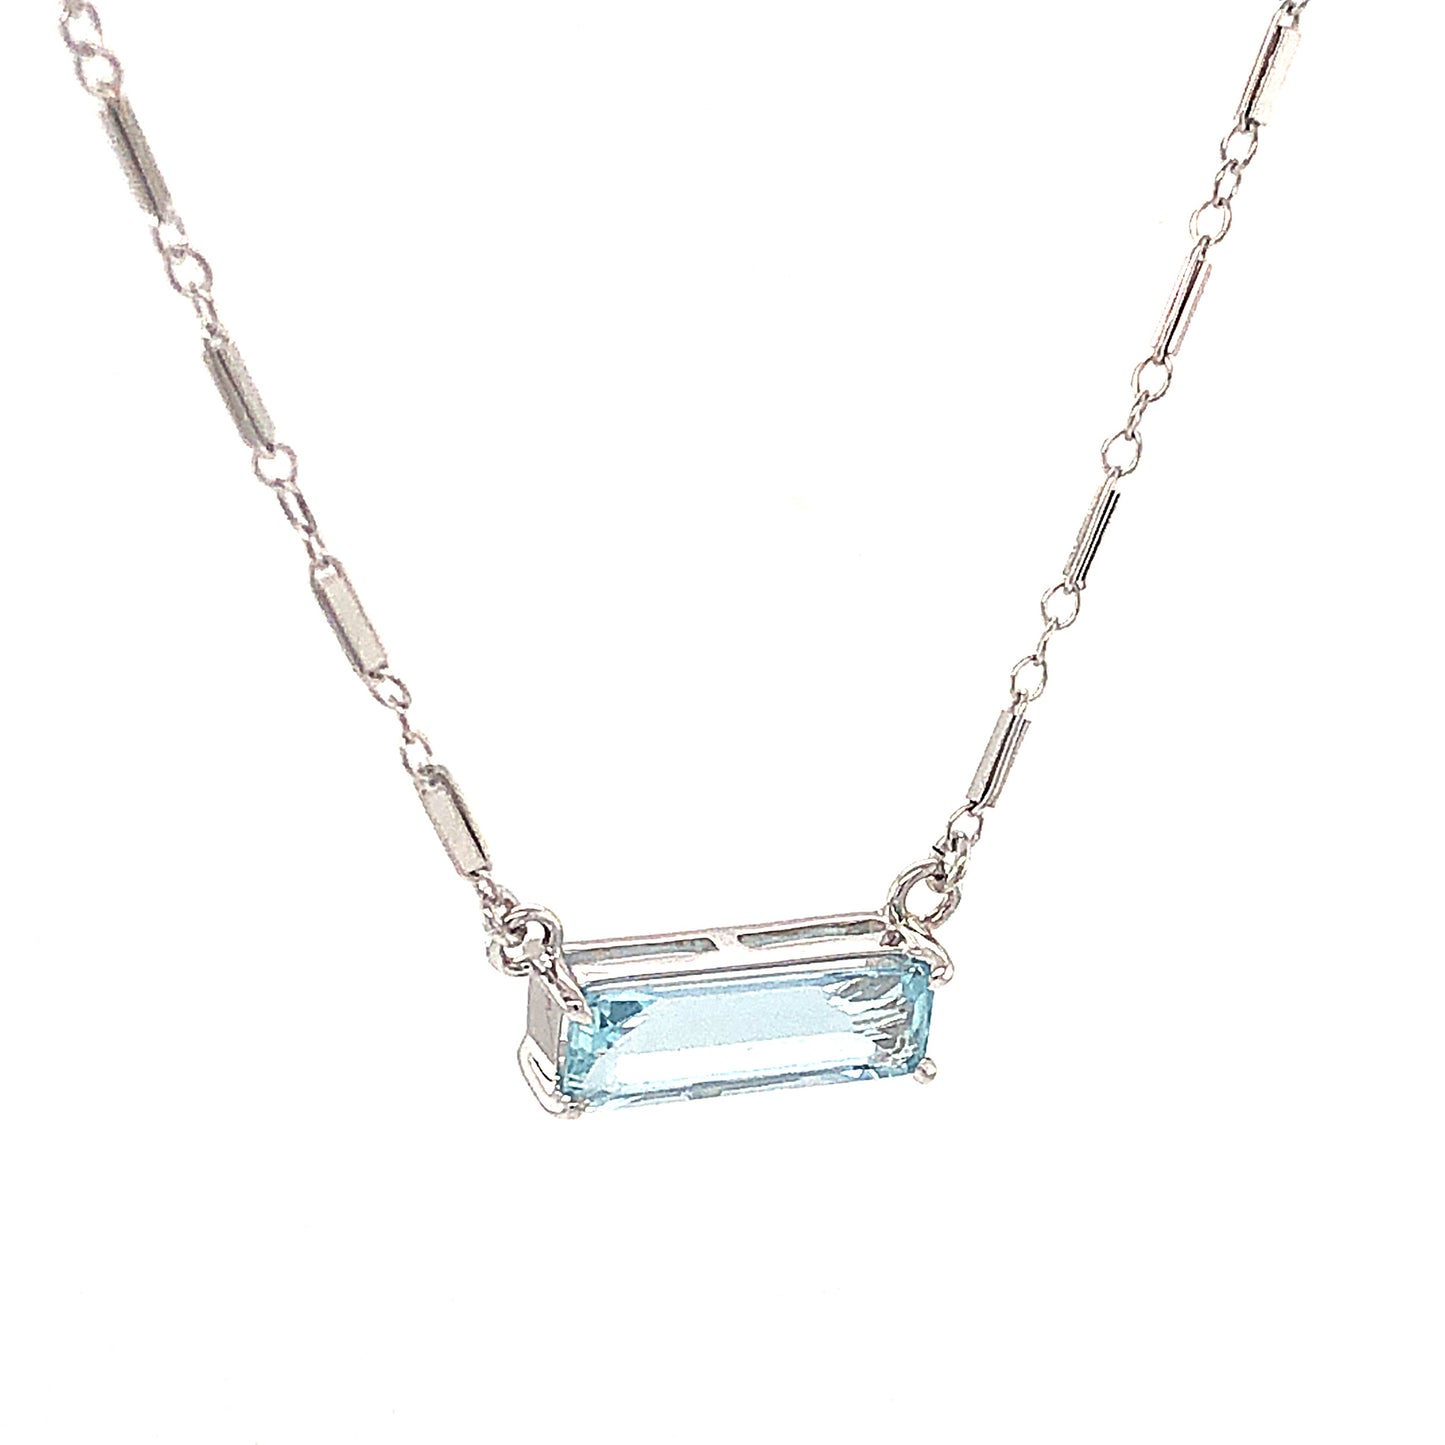 1.63 Emerald Cut Aquamarine Necklace in 14K White Gold